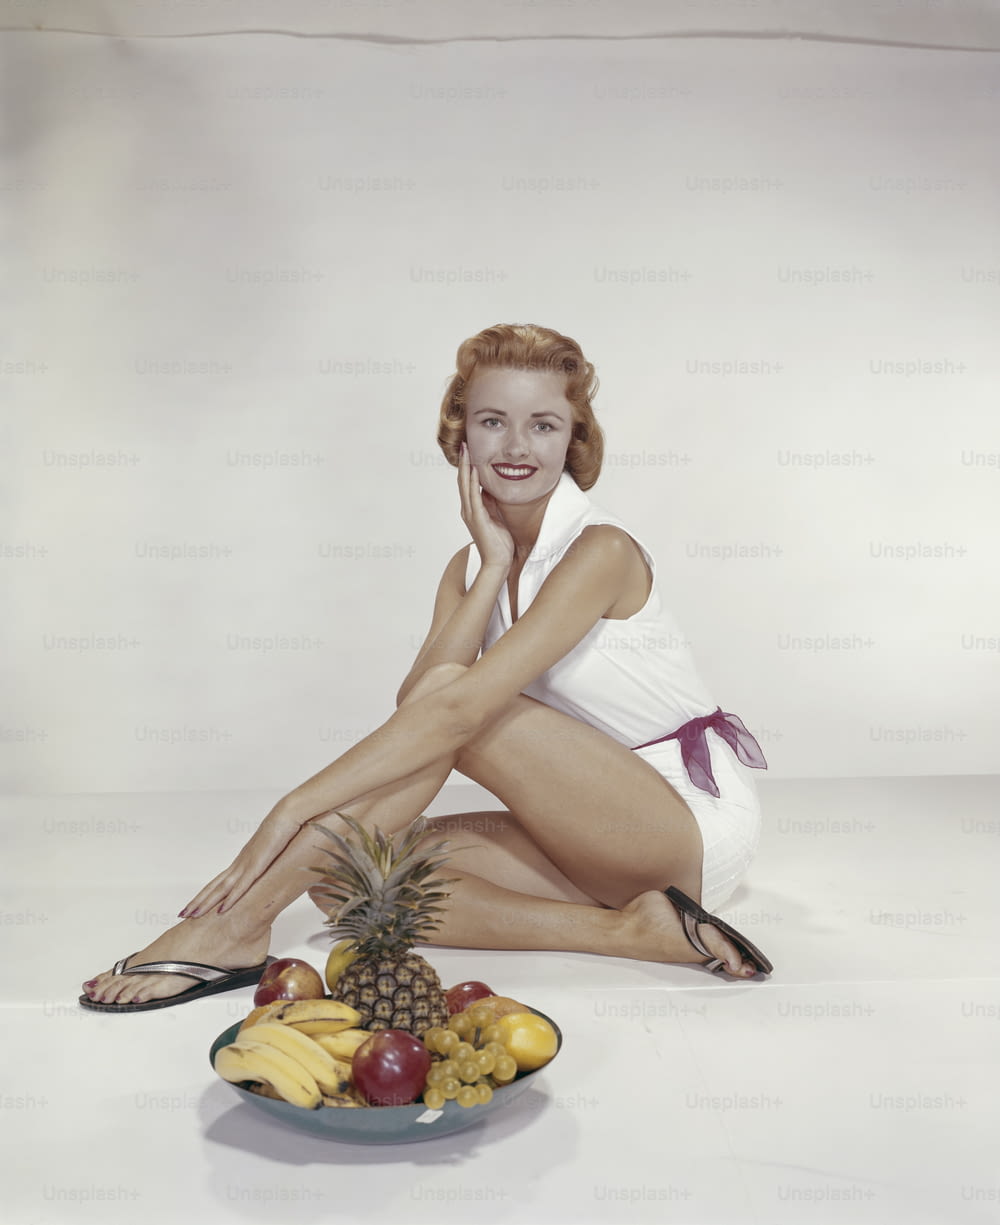 Eine Frau, die neben einem Teller mit Obst auf dem Boden sitzt